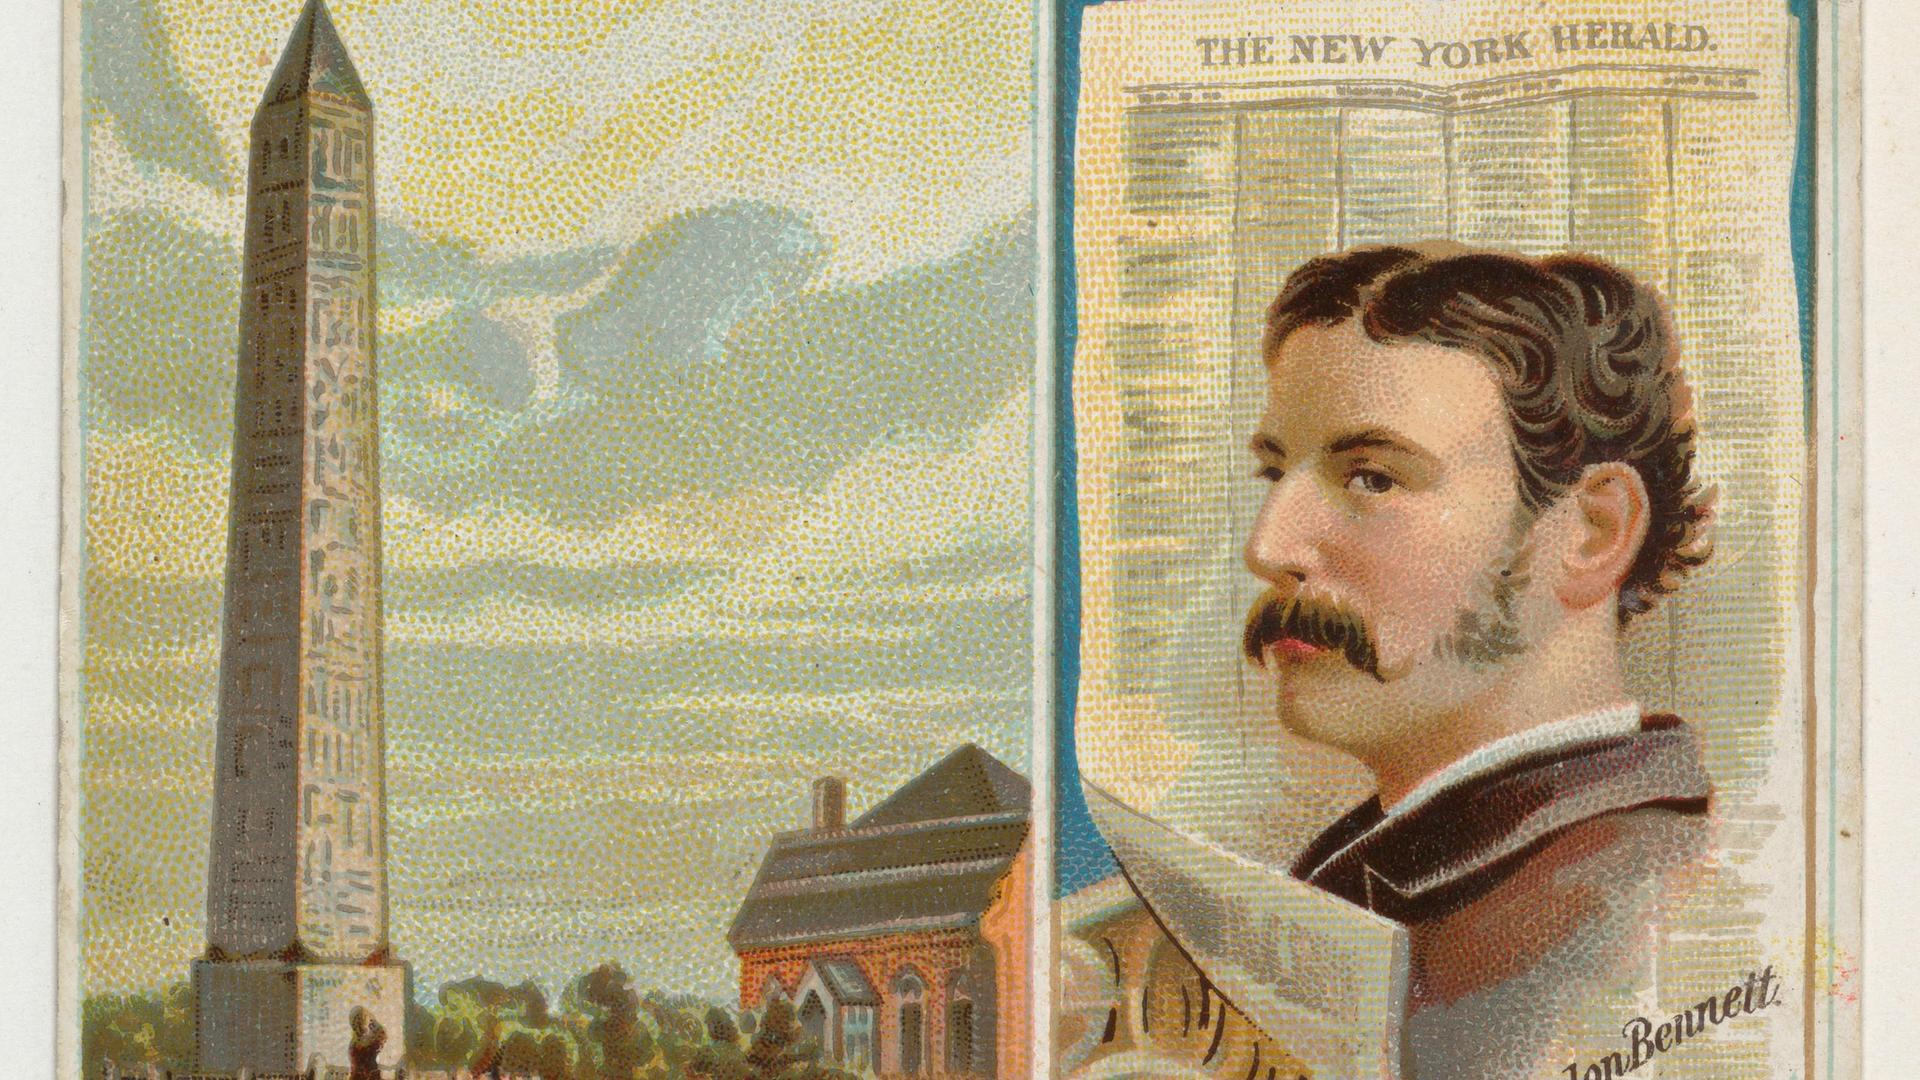 Sammelbild von 1887: James Gordon Bennett und der von ihm gegründete "New York Herald"